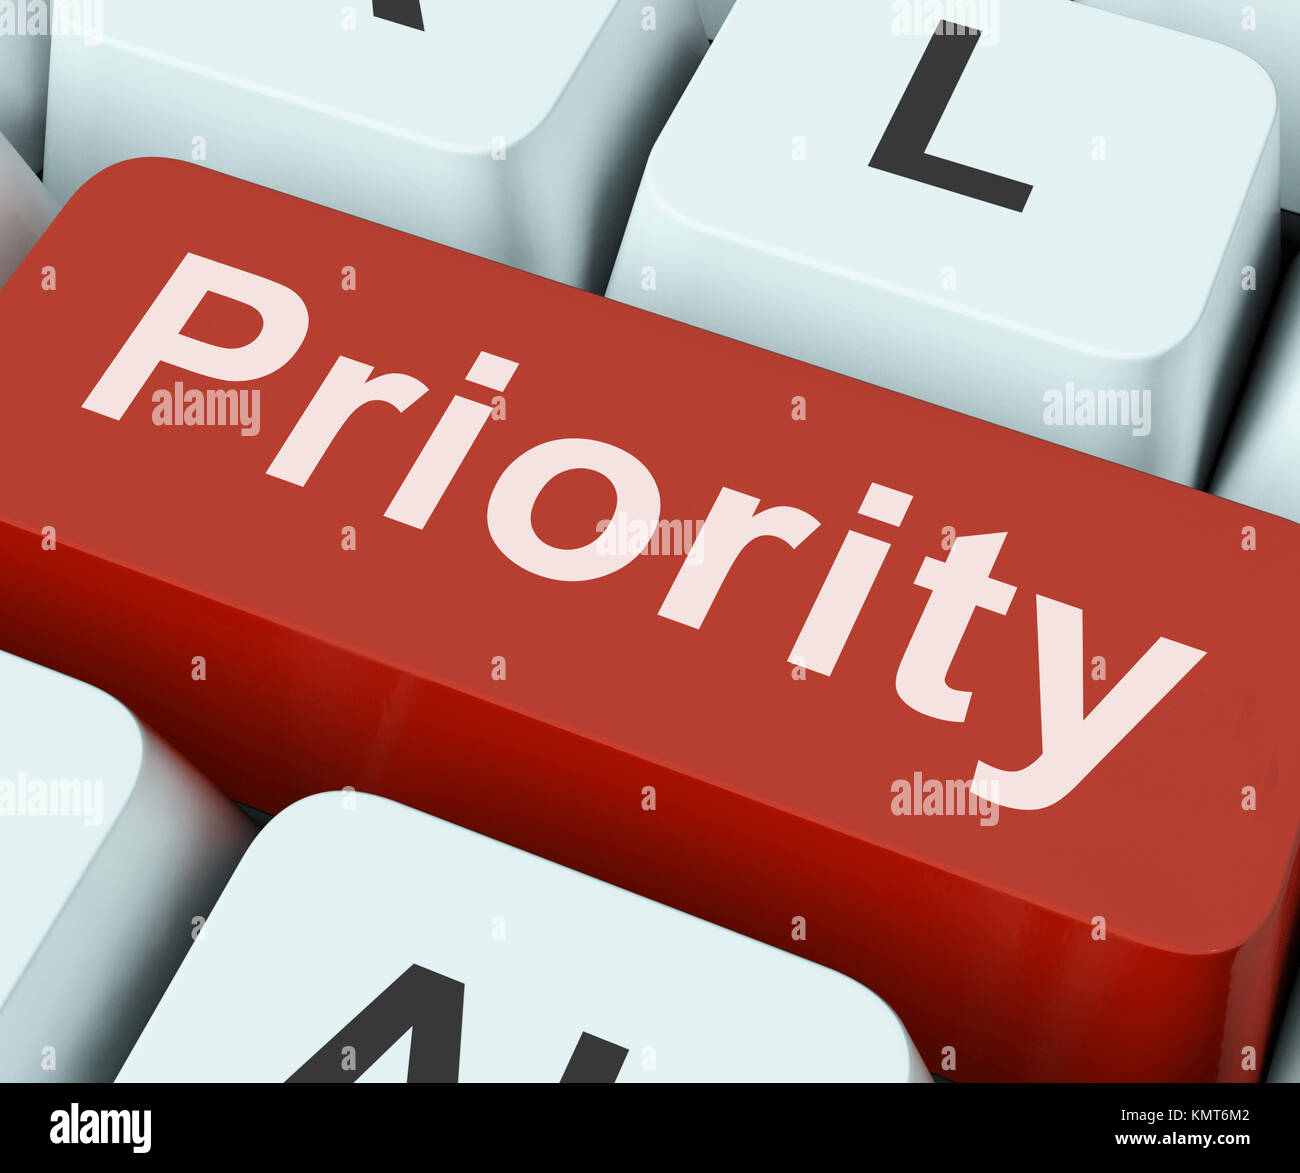 Priorität-Taste auf der Tastatur Bedeutung bevorzugt größere Bedeutung oder Primat Stockfoto